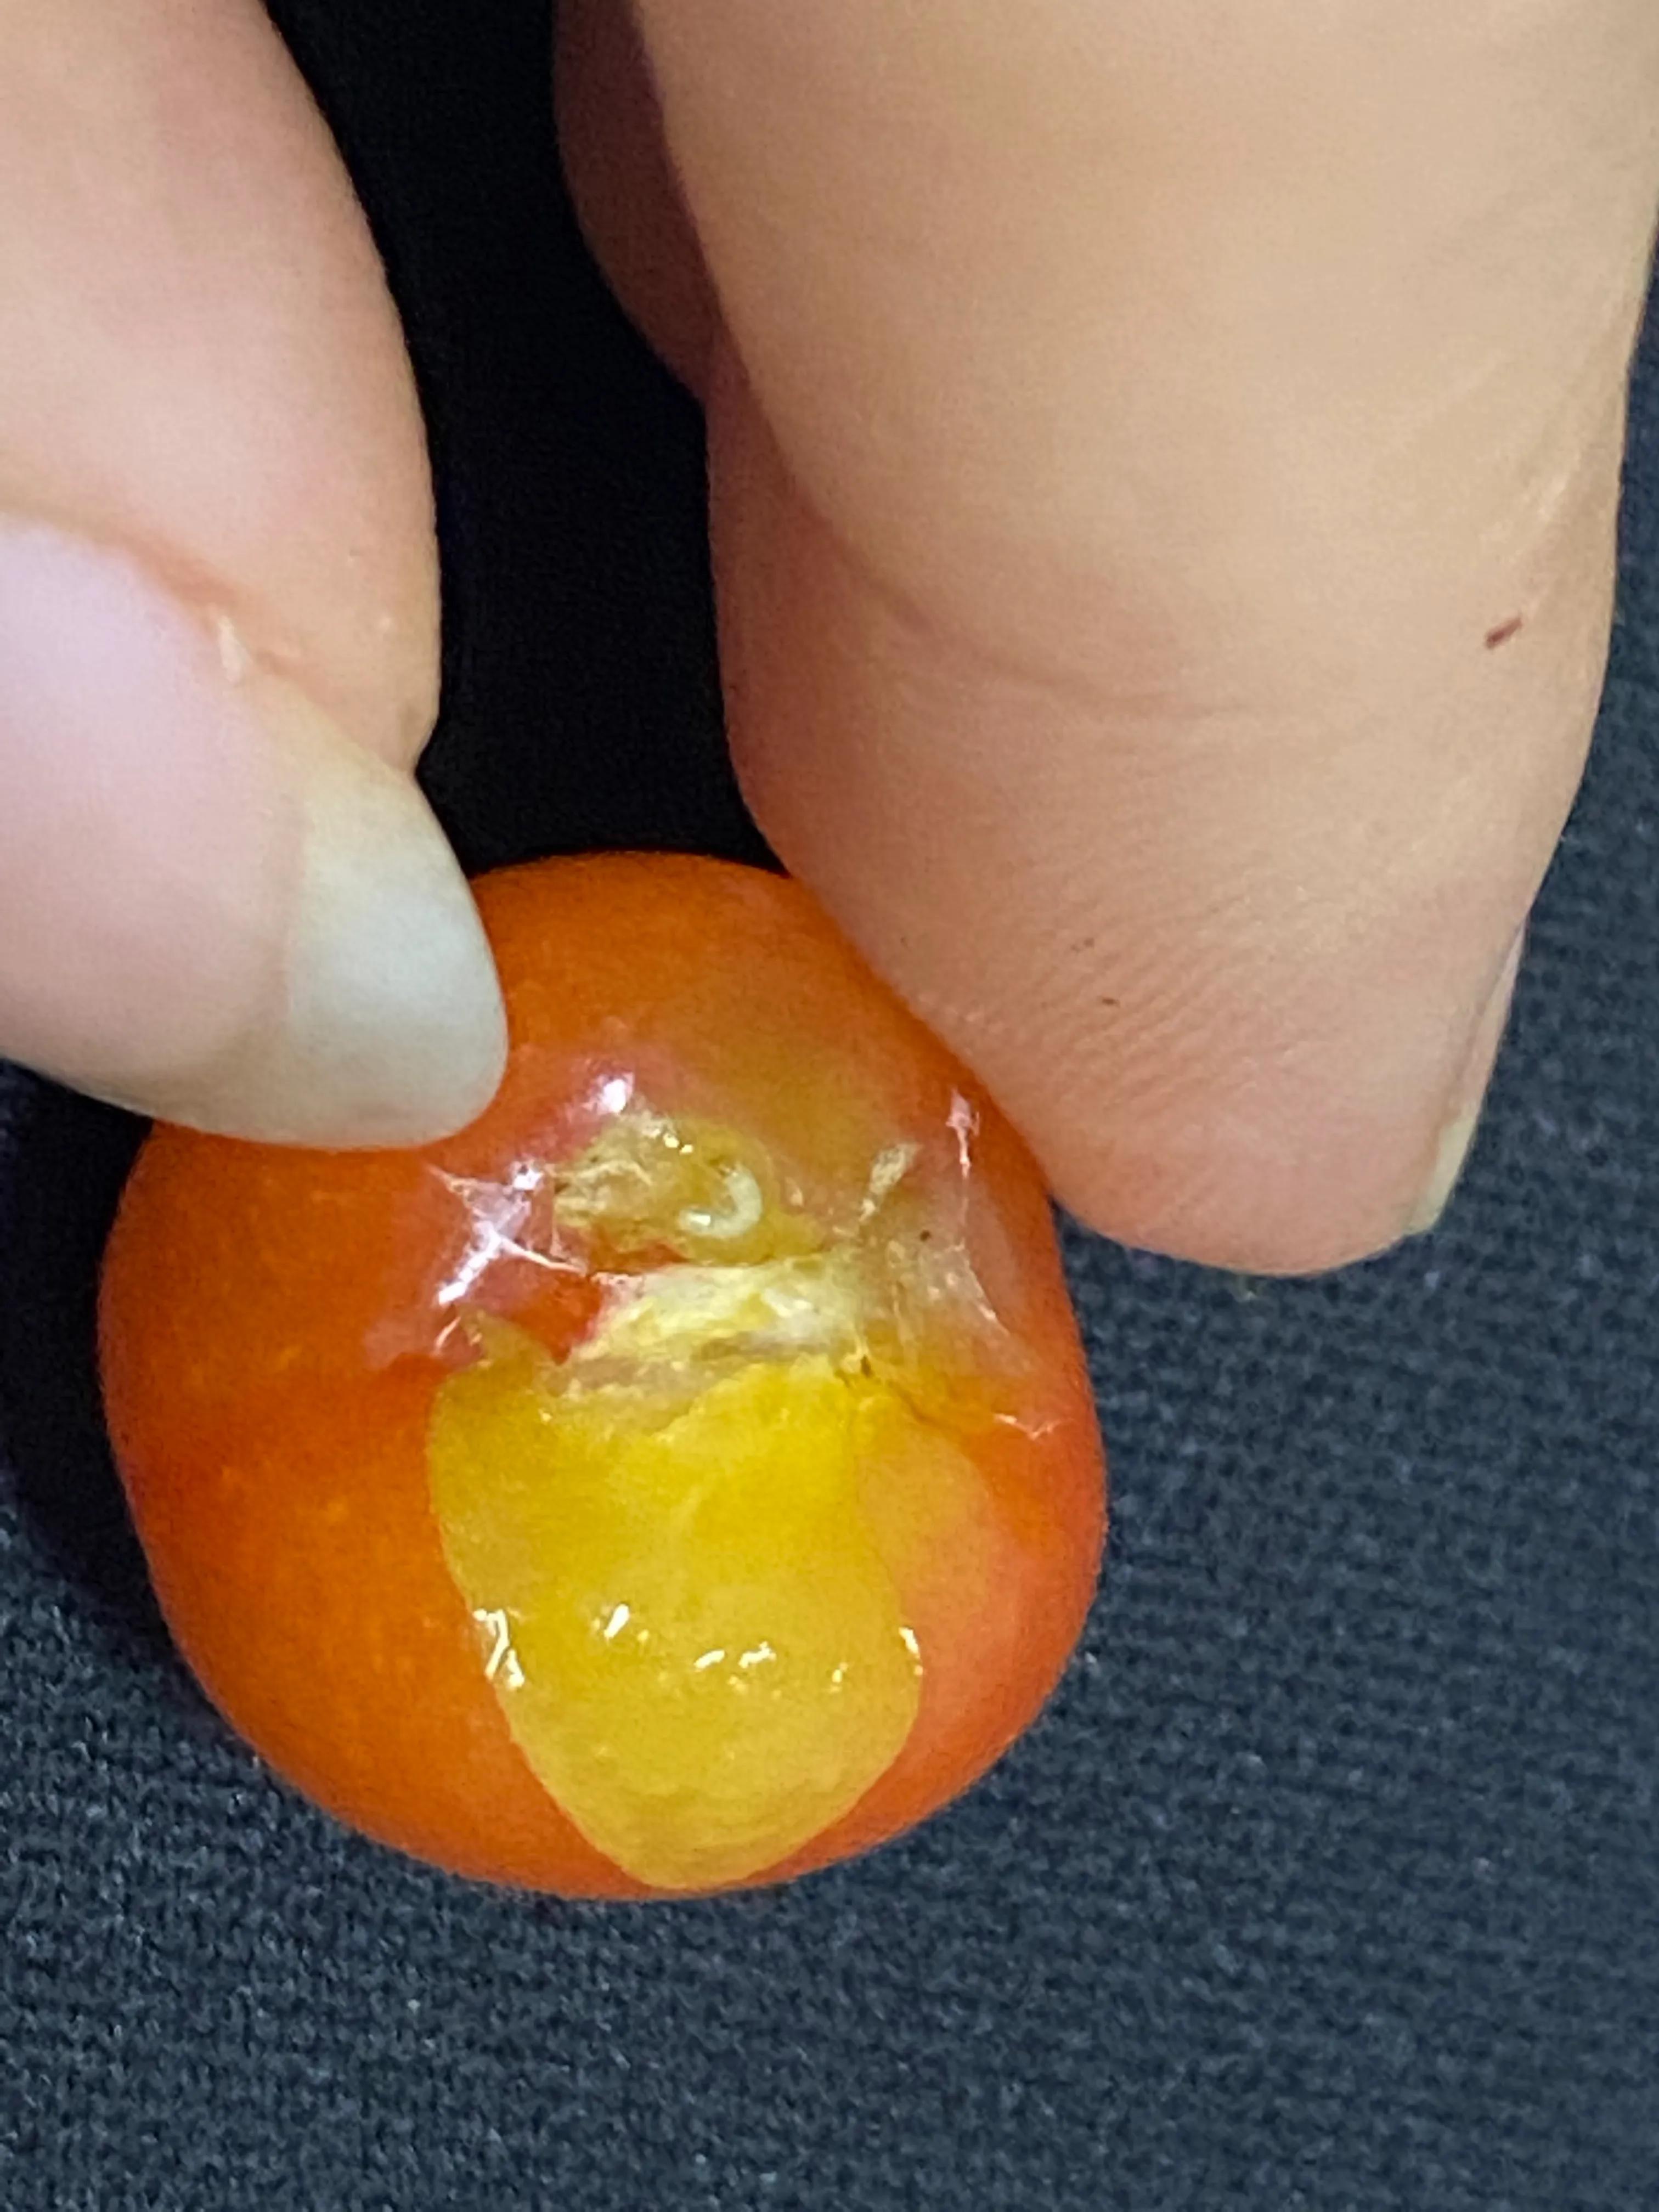 樱桃里面吃出的类似于“蛆”的虫子，会对身体造成伤害吗？